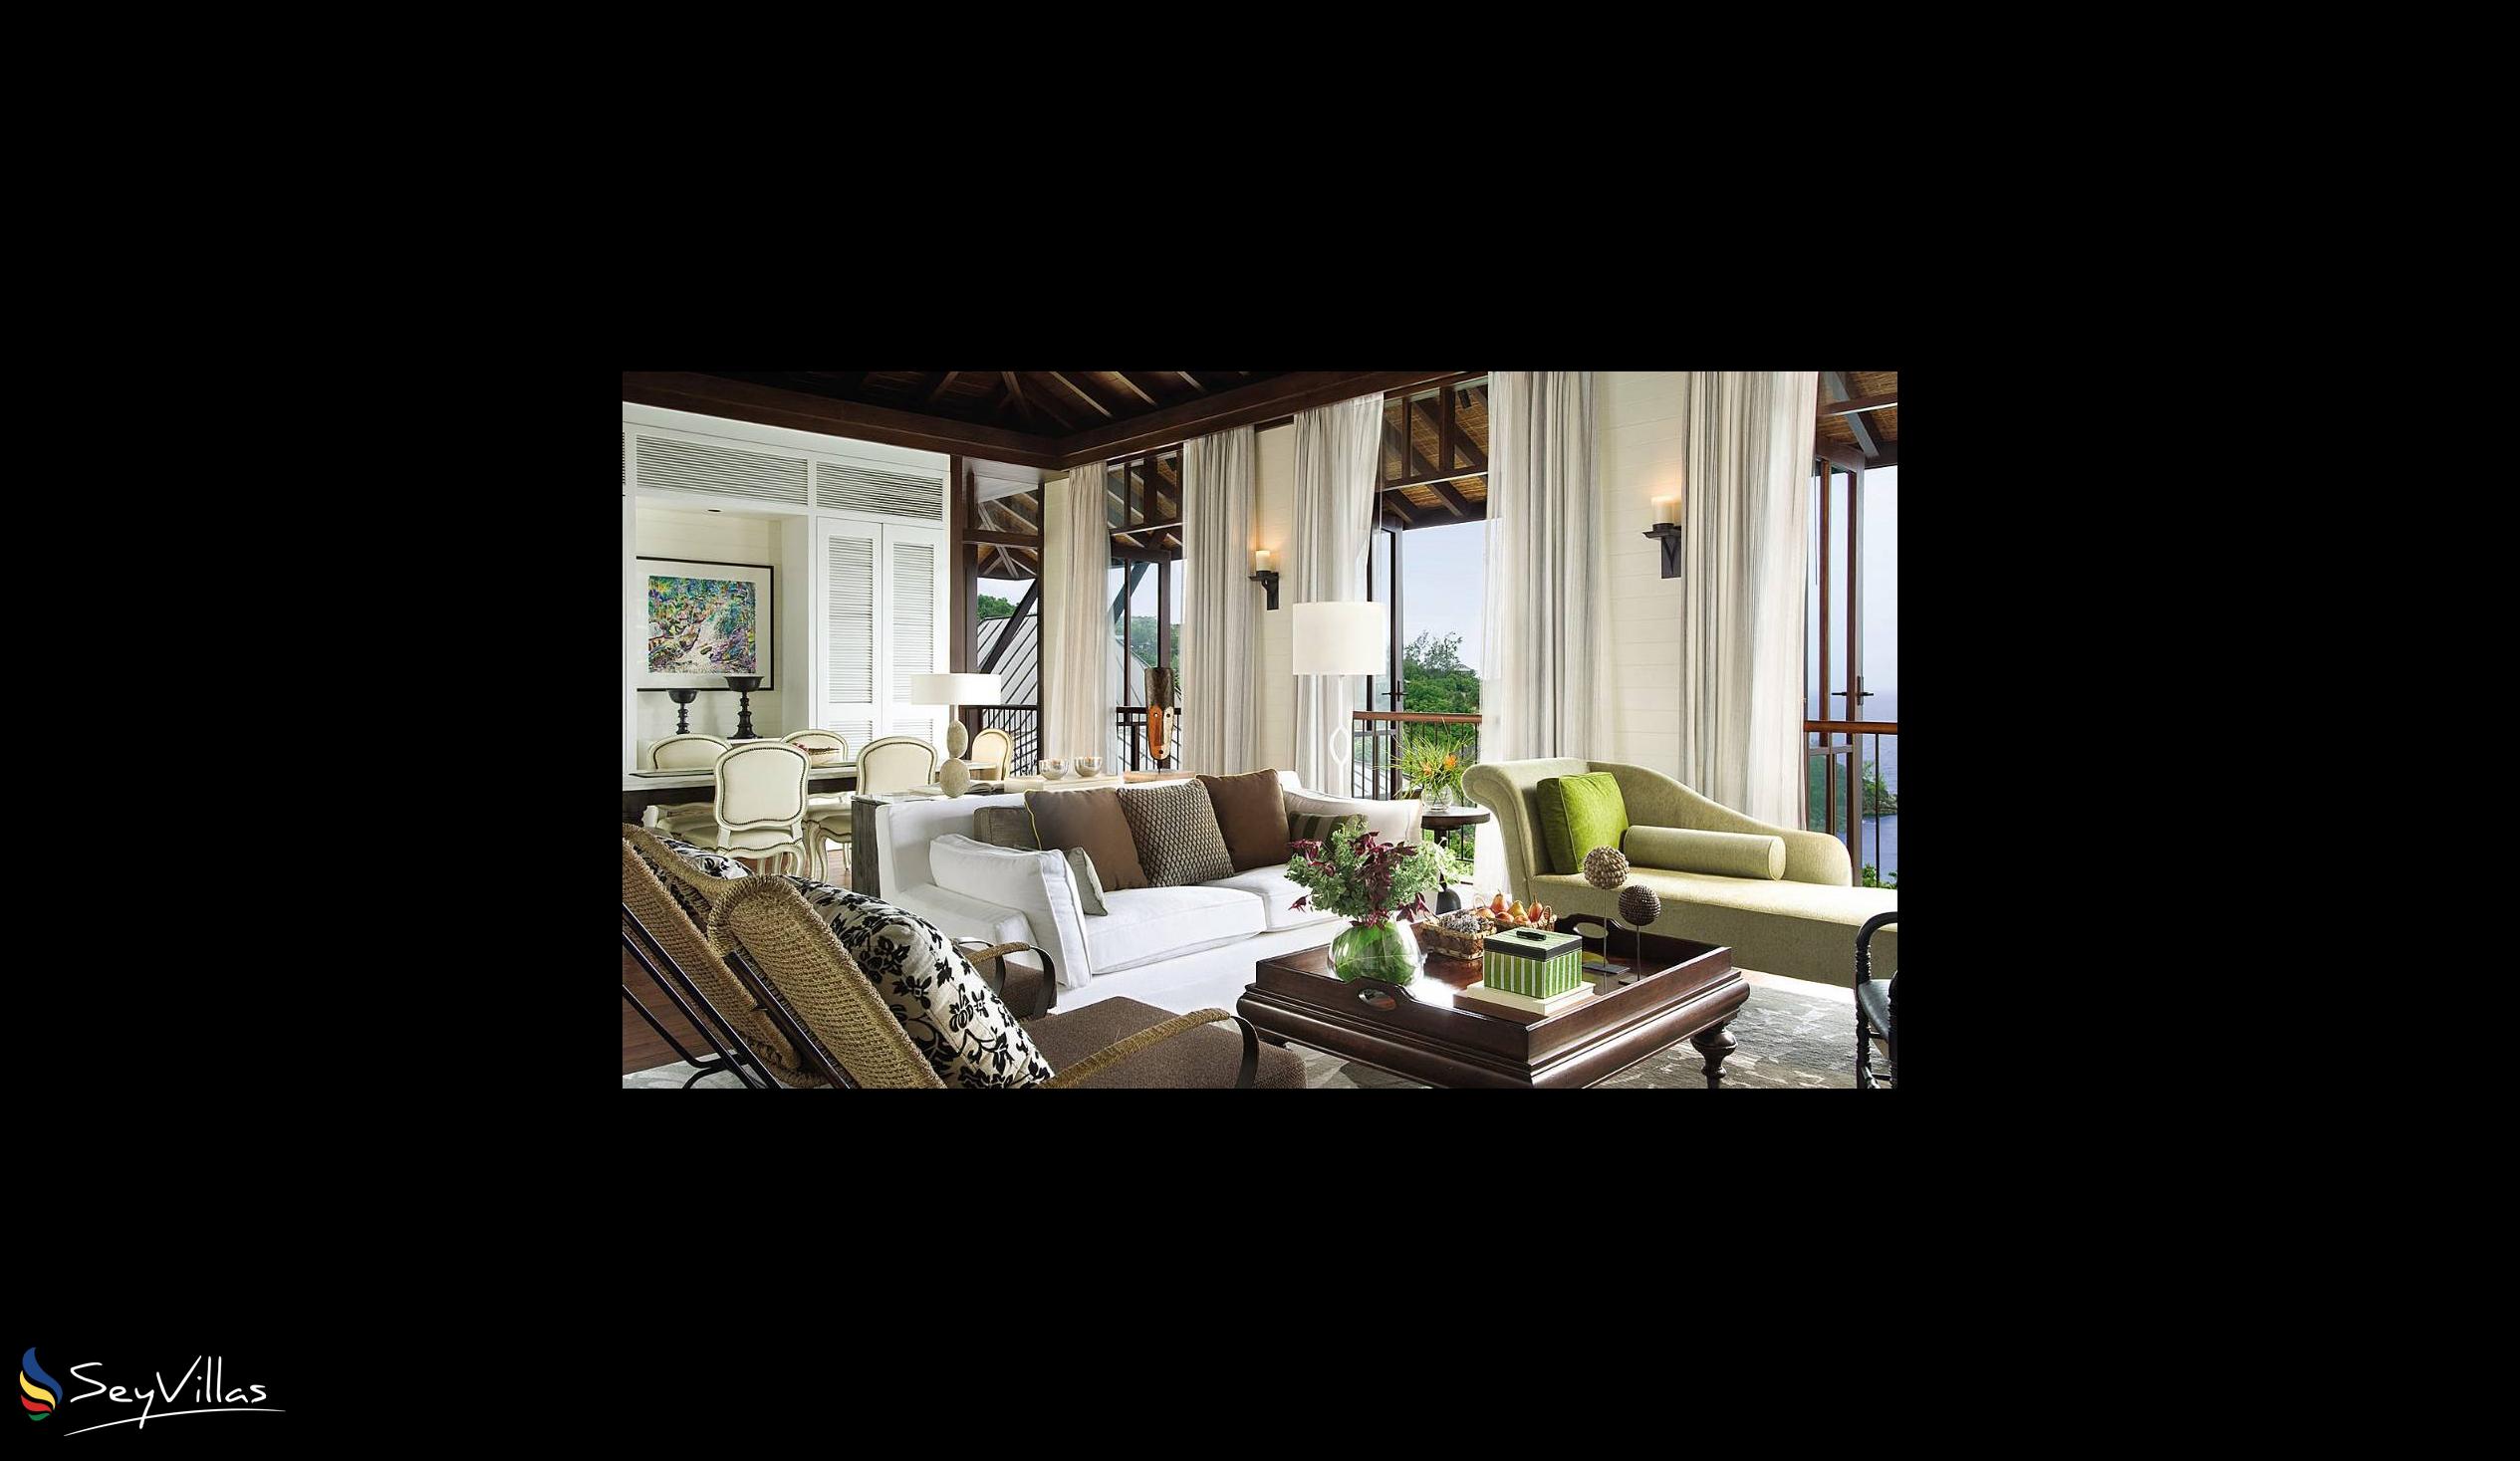 Foto 46: Four Seasons Resort - 2-Bedroom Ocean View Suite - Mahé (Seychellen)